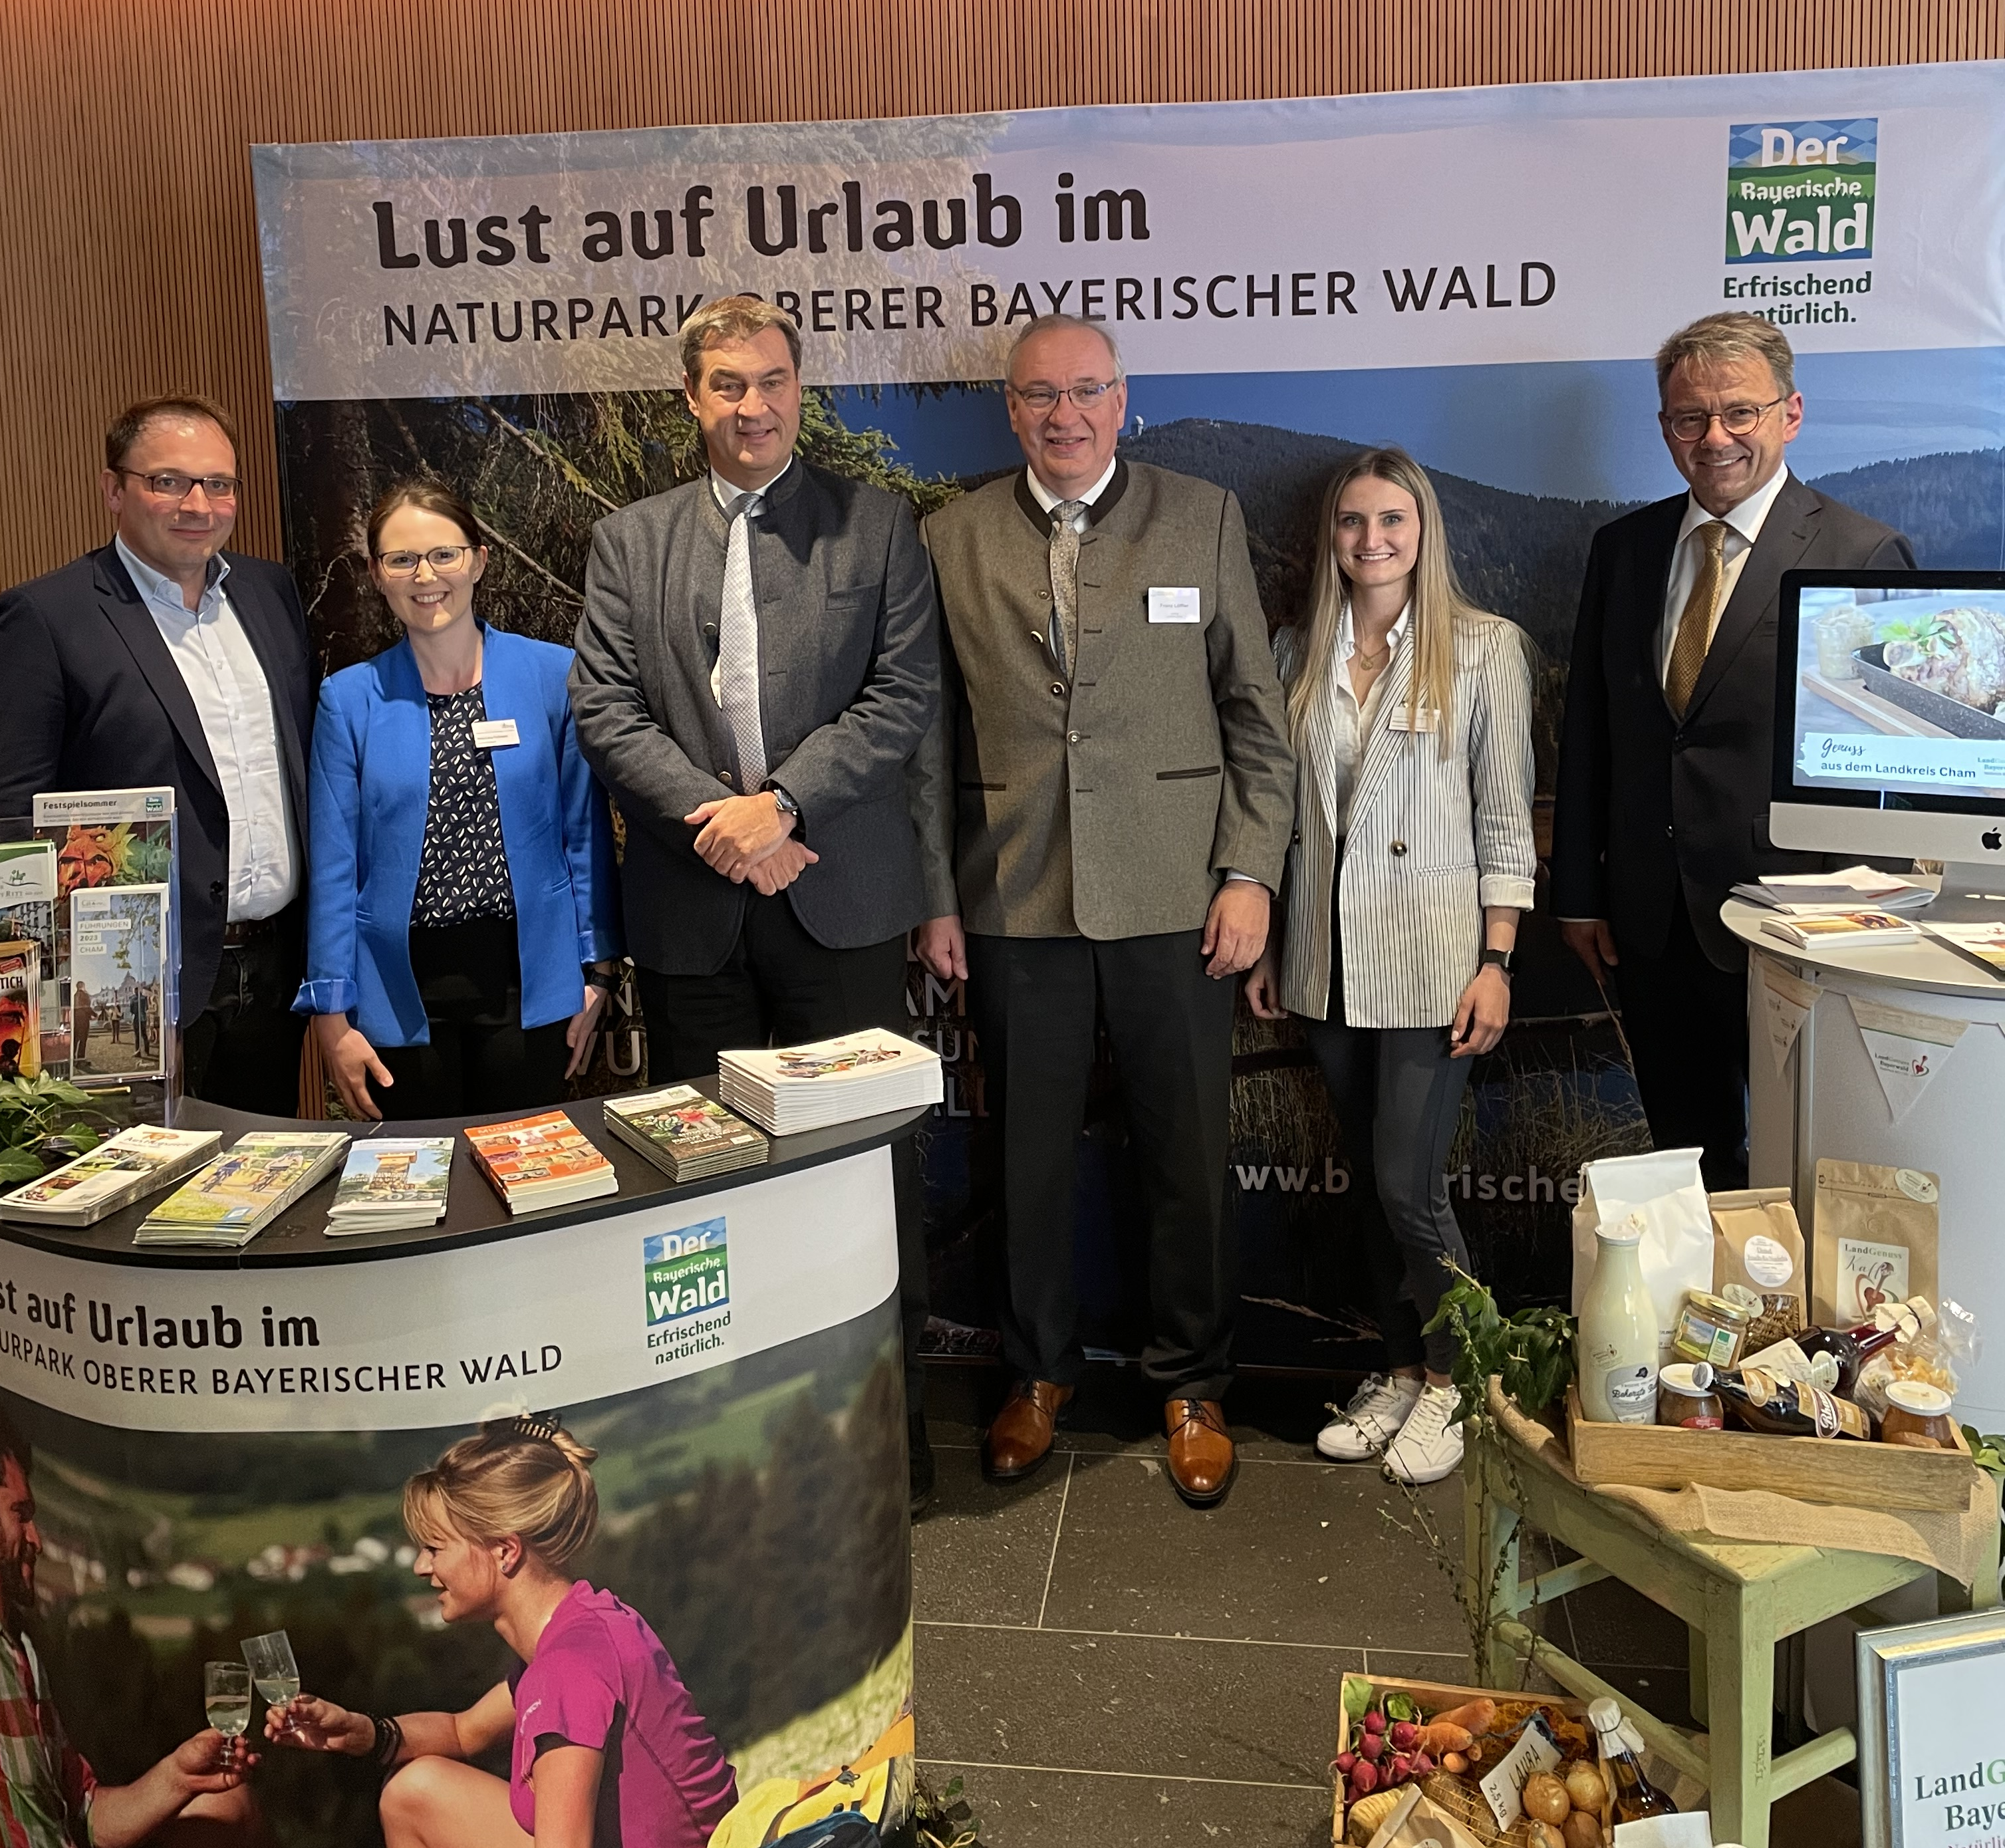 50 Jahre Naturpark Oberer Bayerischer Wald e.V. – ein Grund zum Feiern!